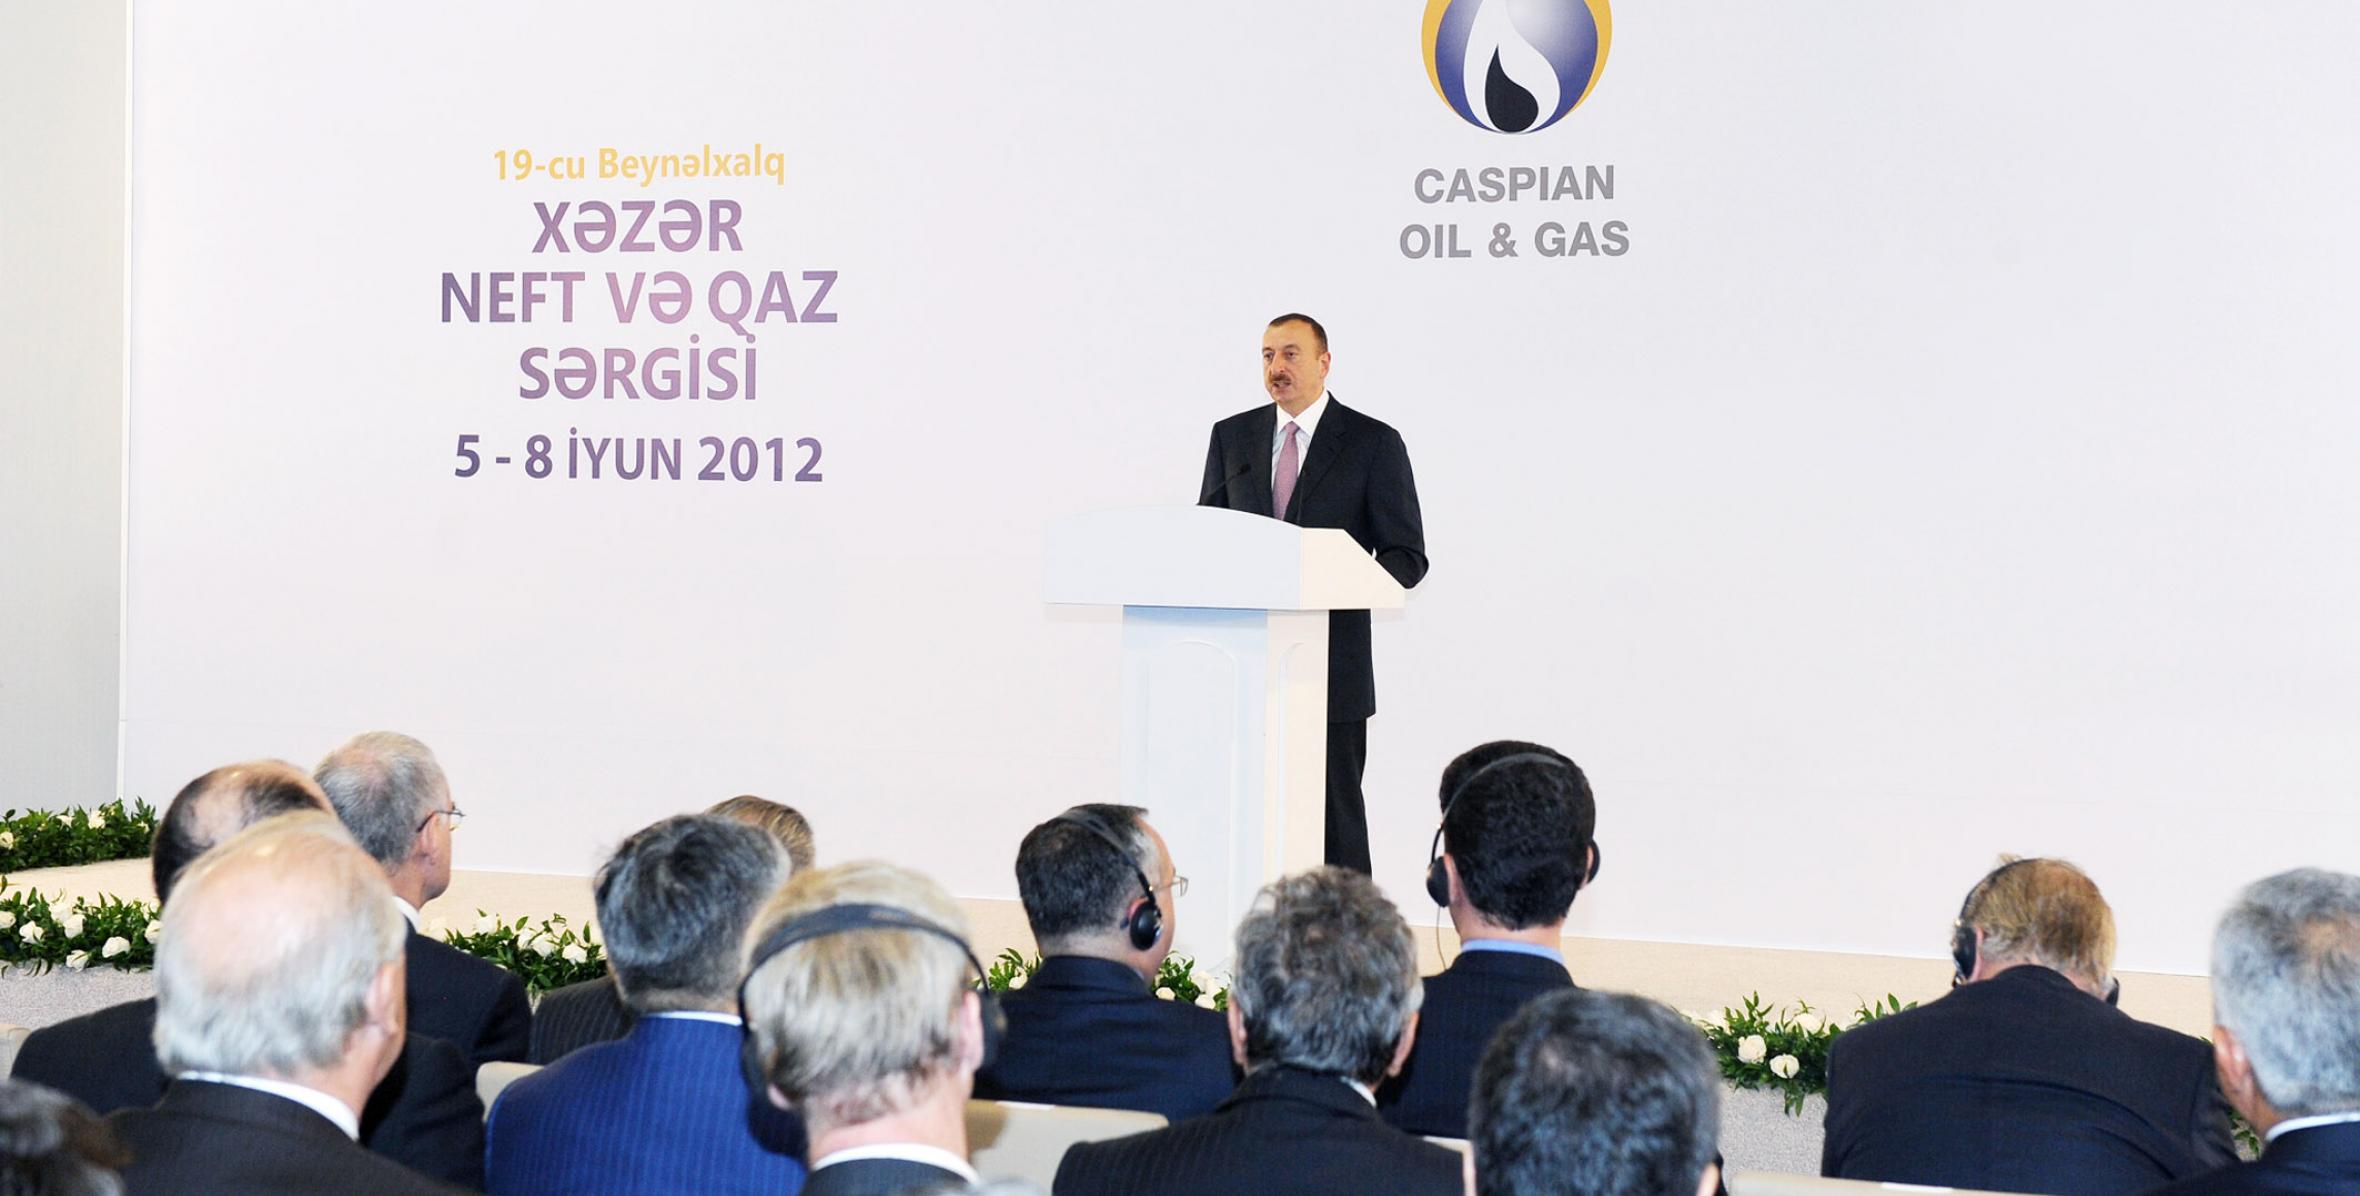 Речь Ильхама Алиева на открытии в Баку XIX Международной выставки и конференции «Нефть, газ, нефтепереработка, нефтехимия Каспия»